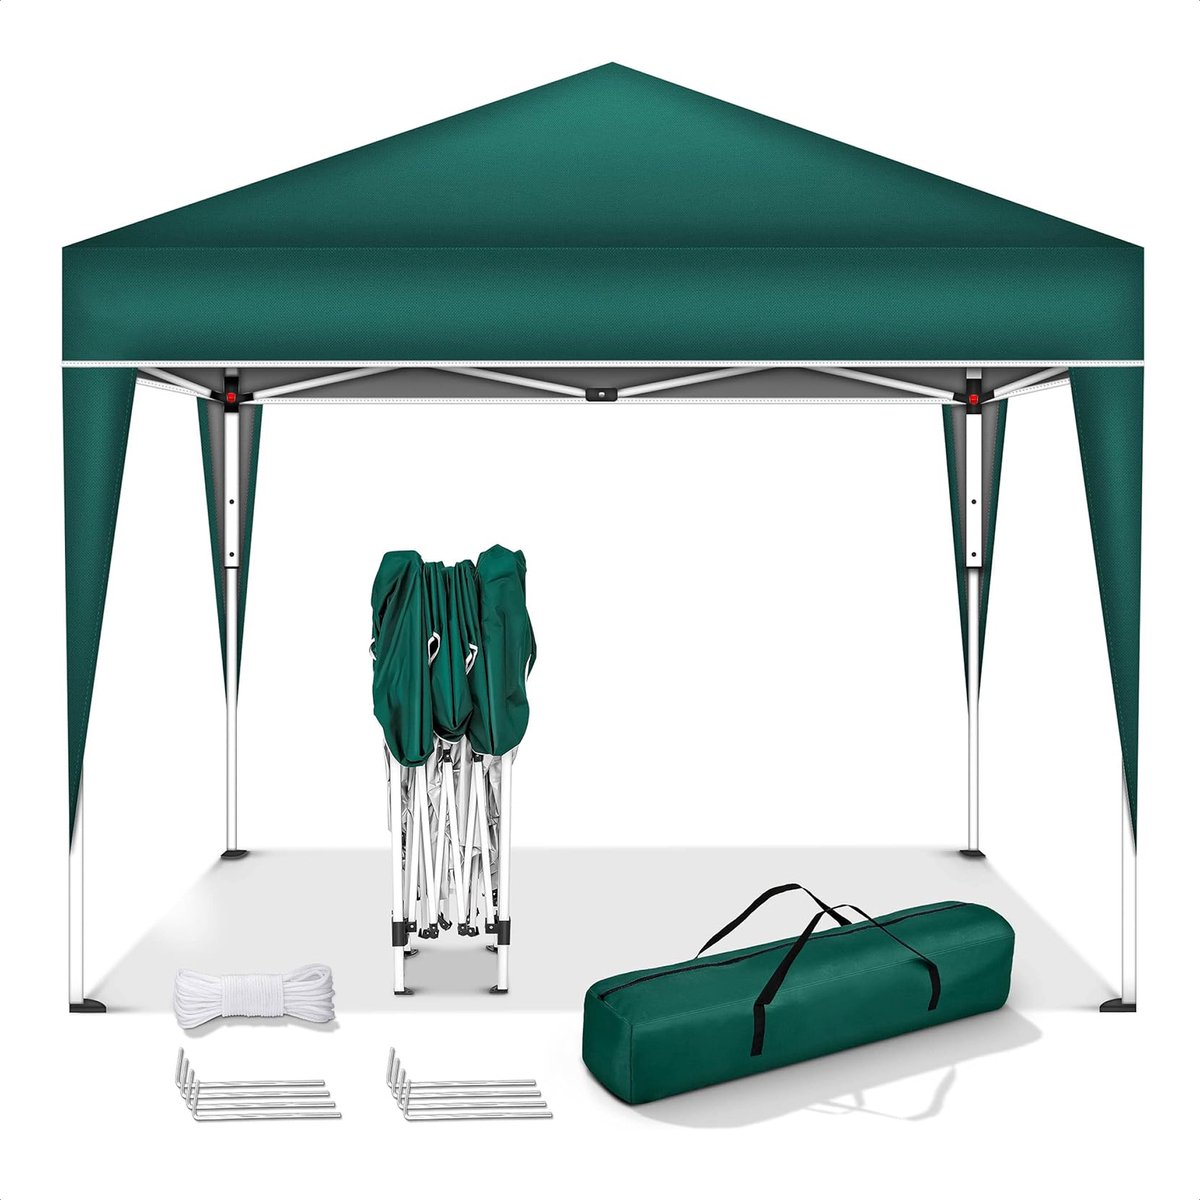 Coazy Waterdichte Partytent 3x3 meter opvouwbaar - Paviljoen - Easy up - Pop-up Tent met haringen, touw en anti slip poten